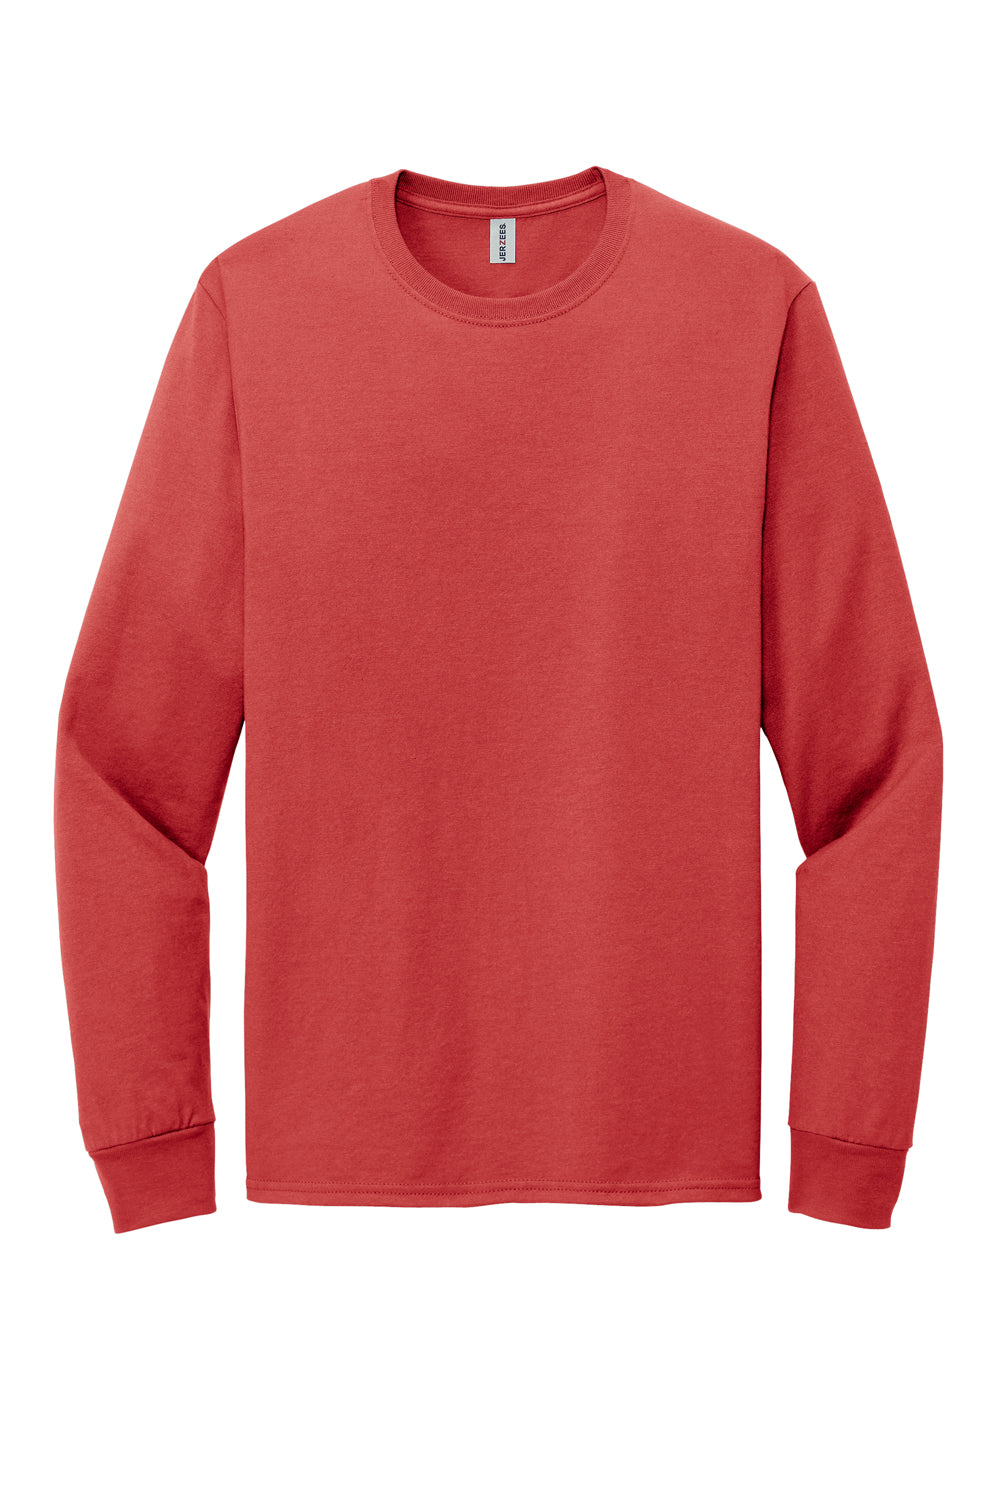 Jerzees 560LS Mens Premium Blend Ring Spun Long Sleeve Crewneck T-Shirt True Red Flat Front